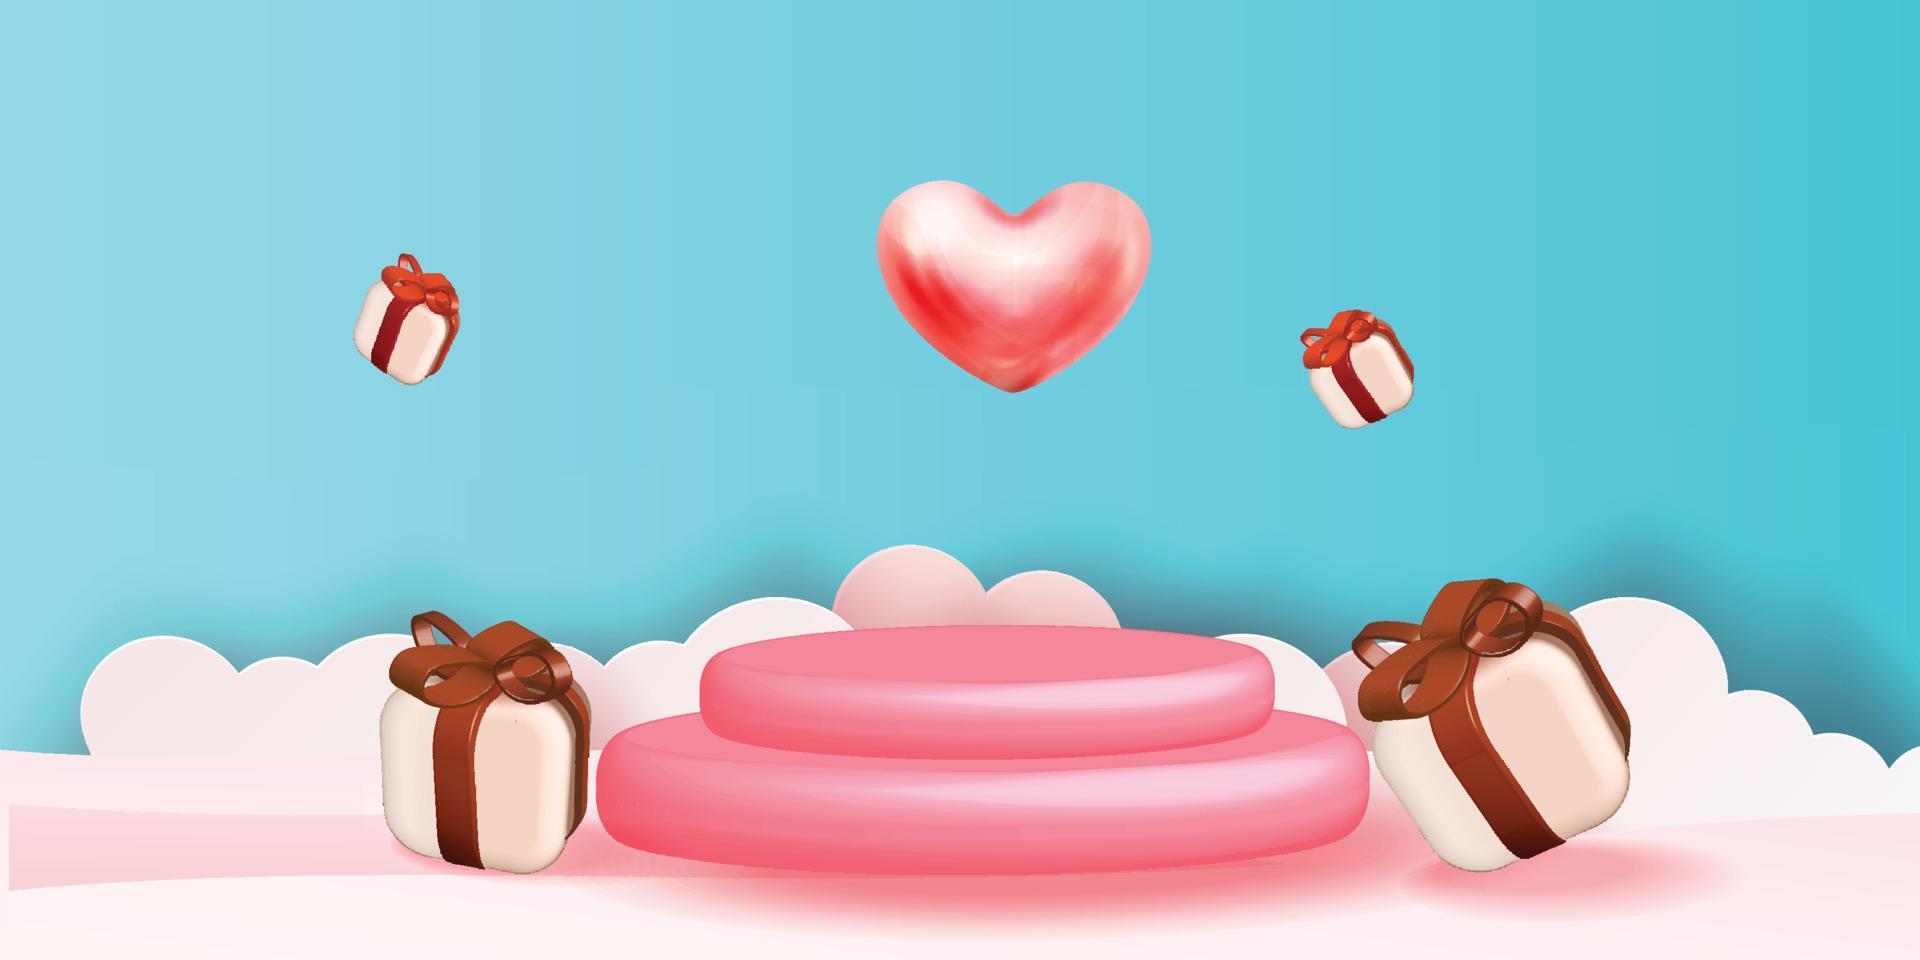 Fondo de producto rojo podio 3d para san valentín rosa y corazón amor romance concepto diseño vector illustation decoración banner